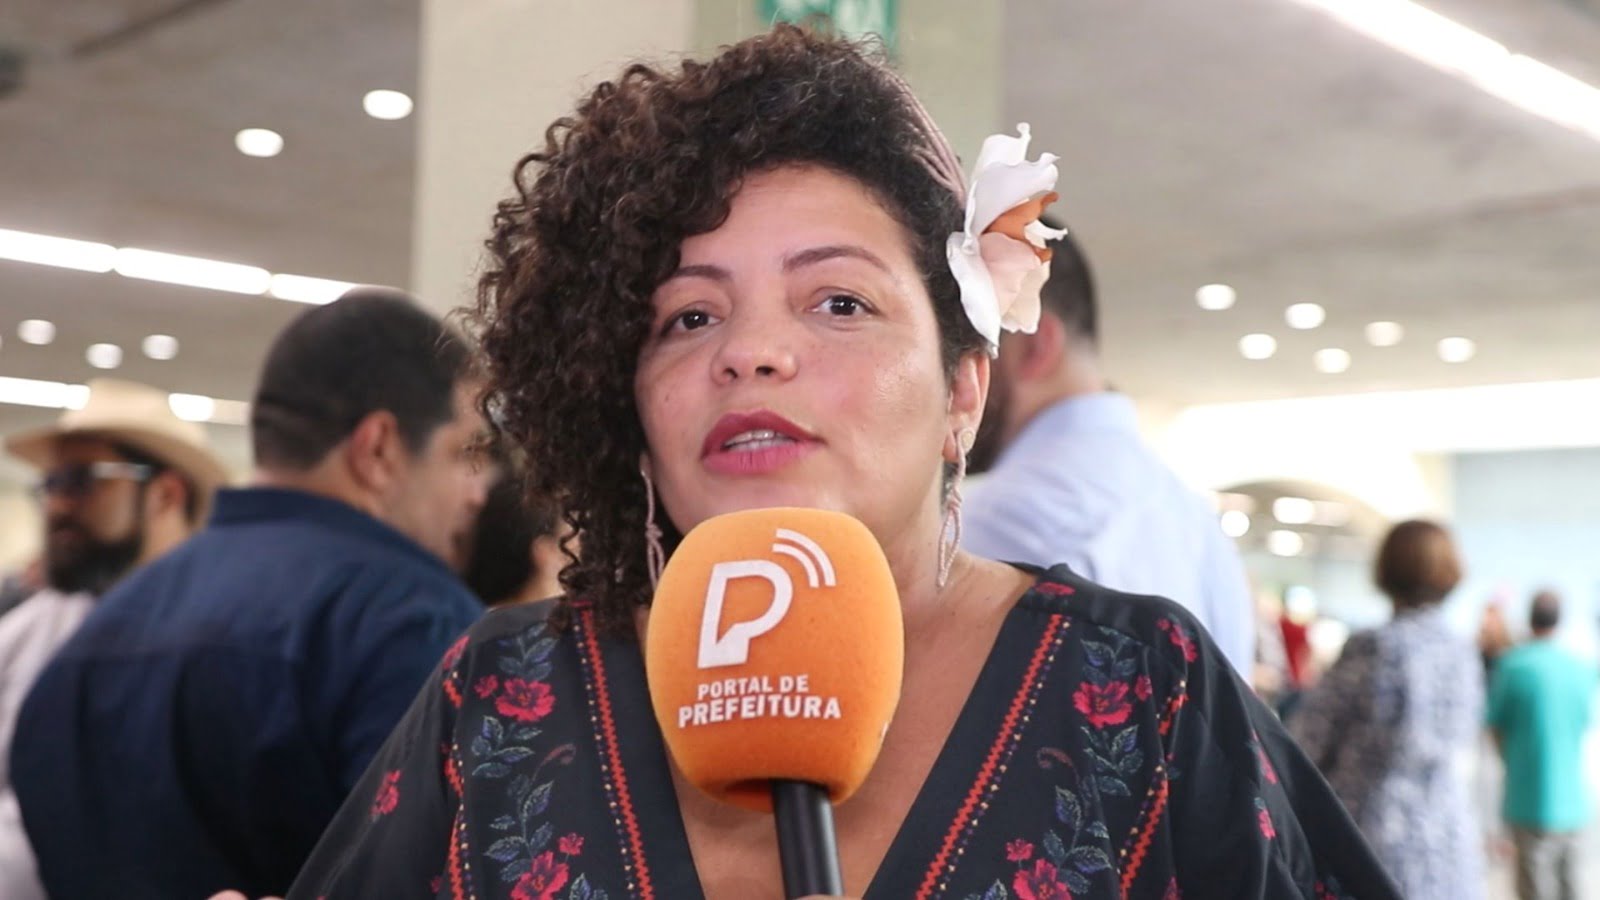 Pré-candidatura de DANI PORTELA à prefeitura do Recife vai ser lançada nesta quarta (15) por PSOL/Rede